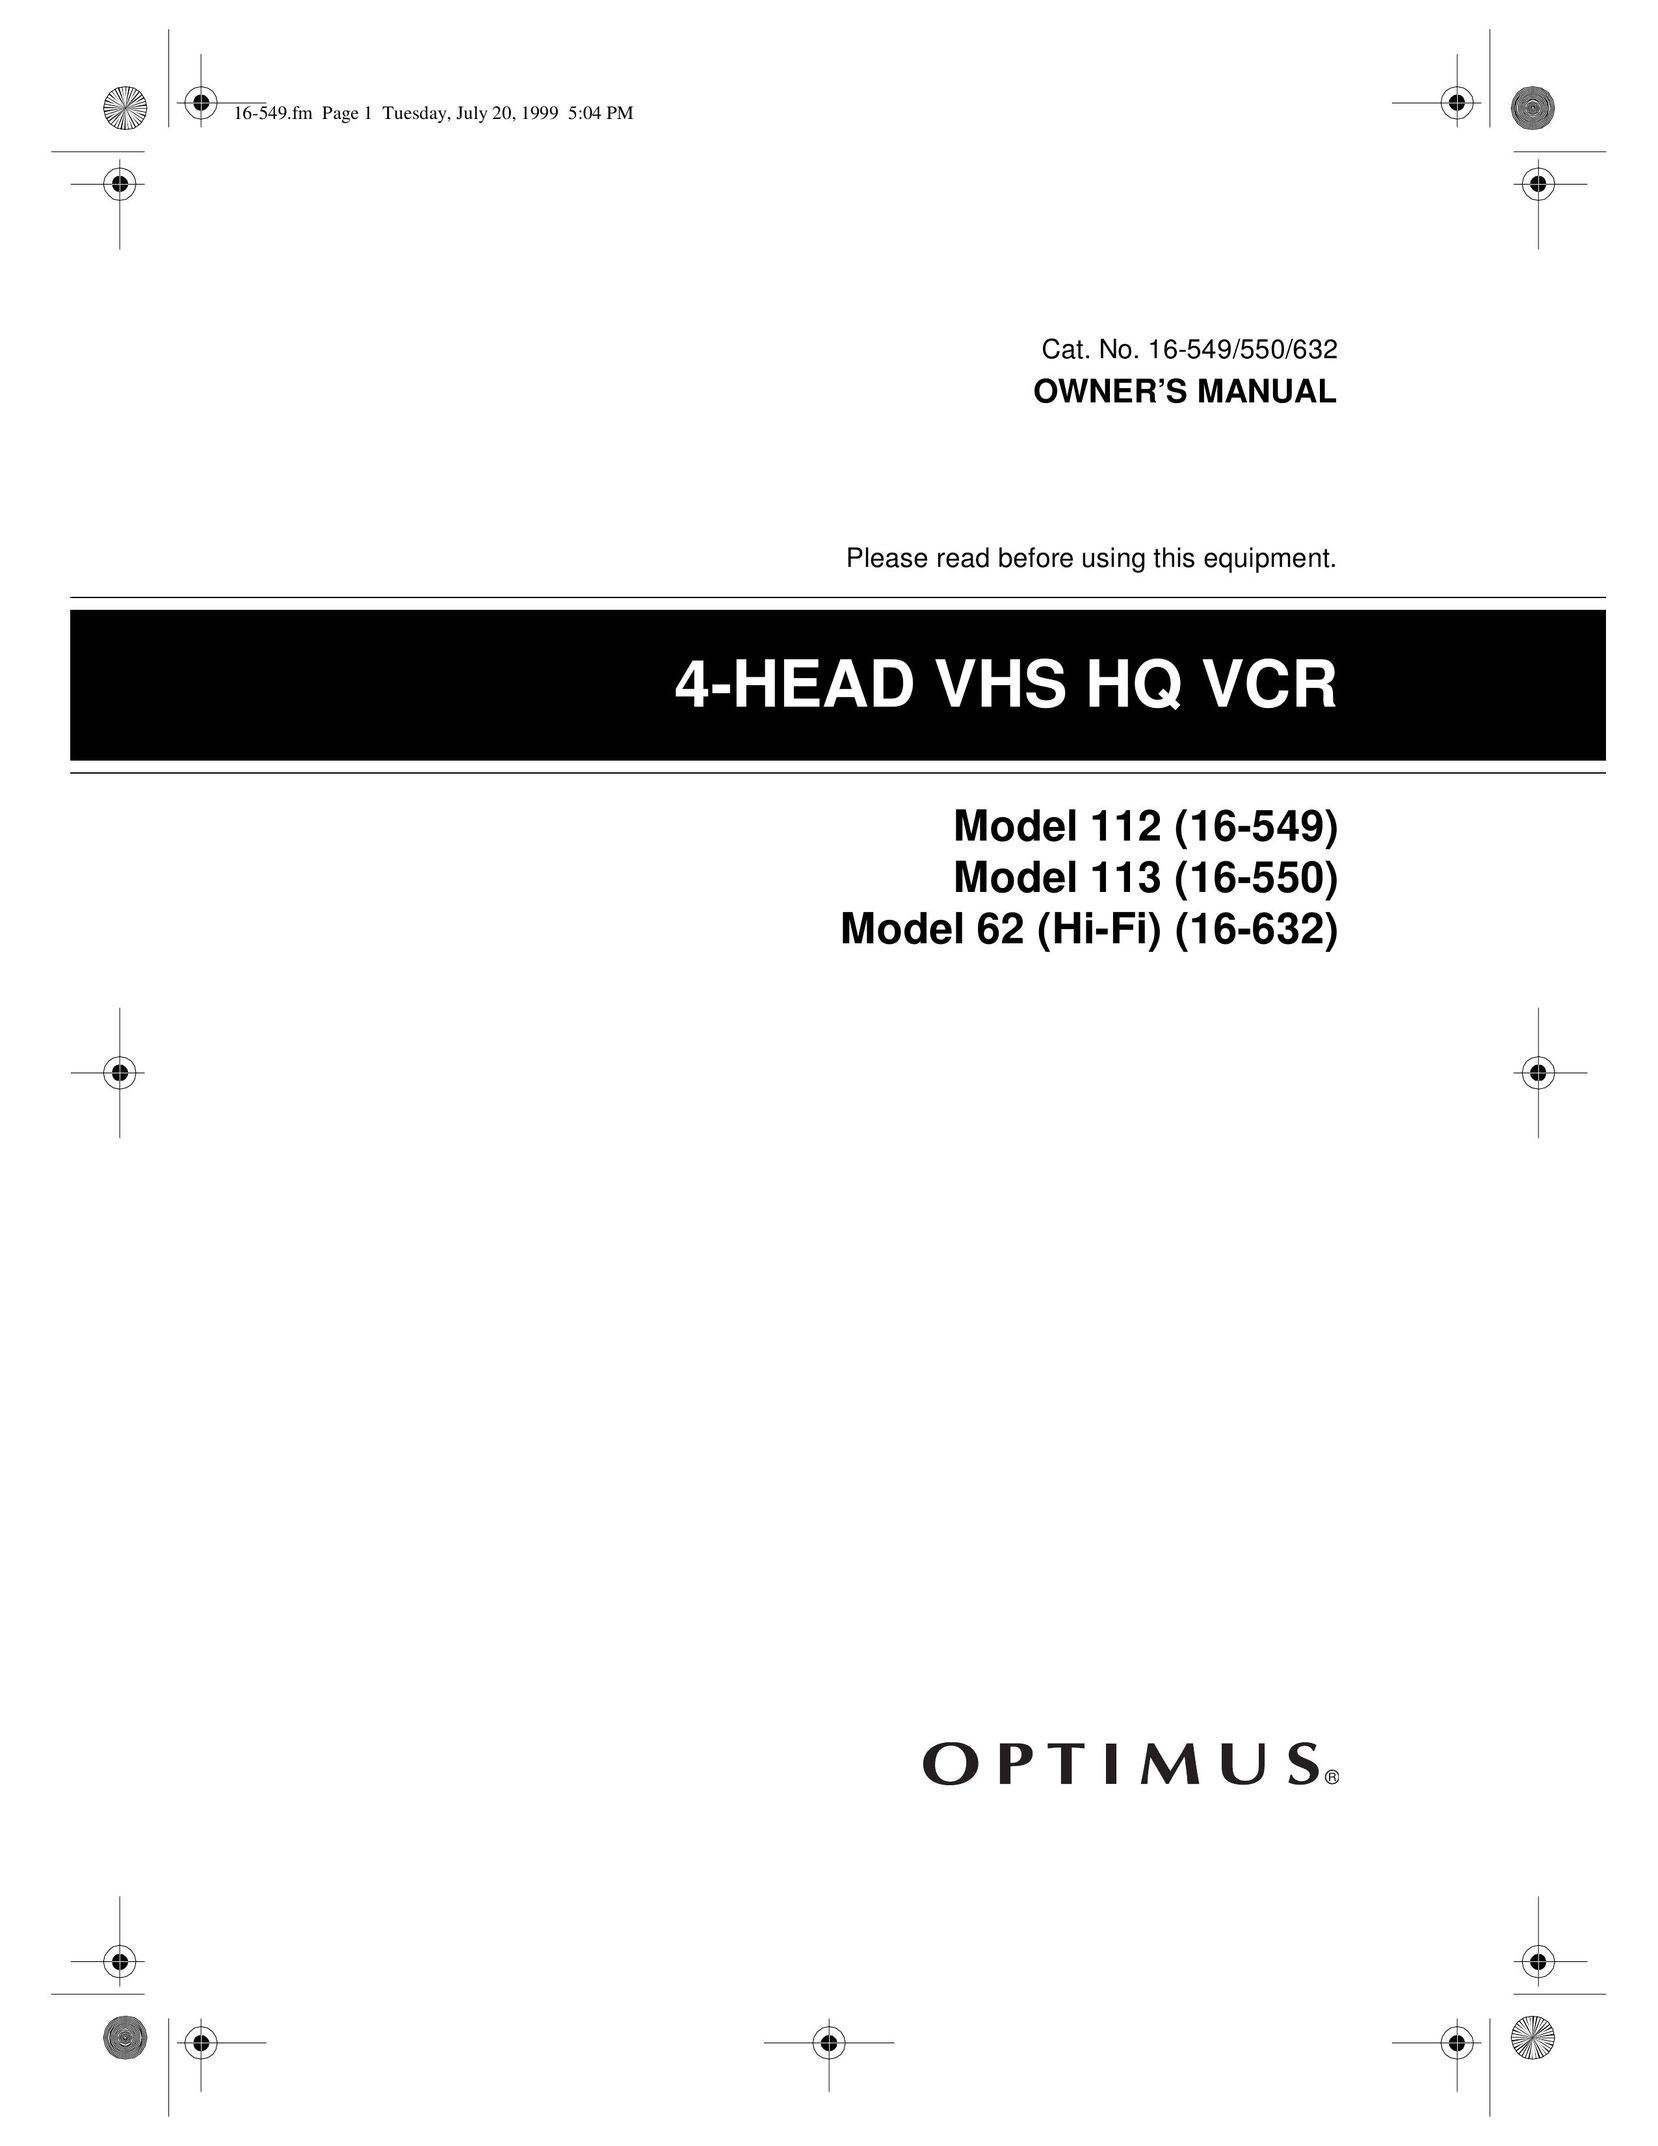 Optimus 16-549 VCR User Manual